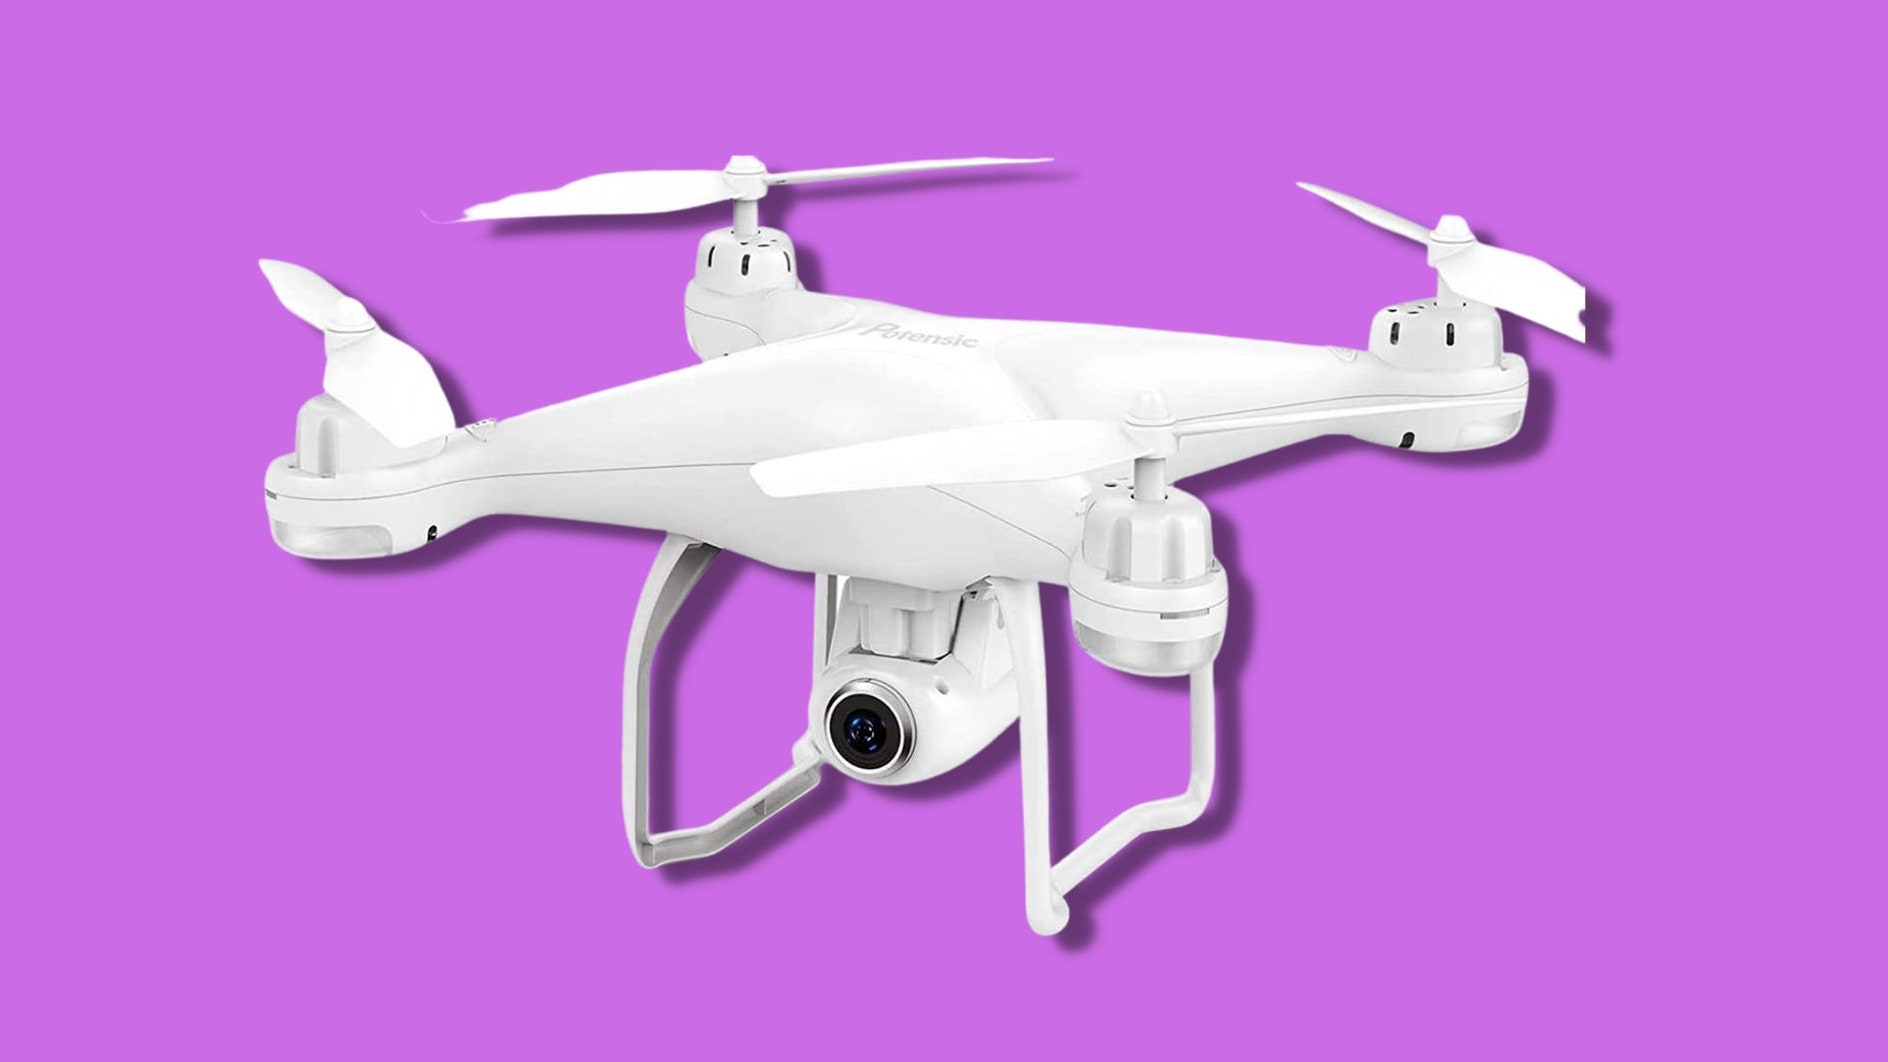 I migliori droni economici per volare in alto senza finire sul lastrico
| Wired Italia